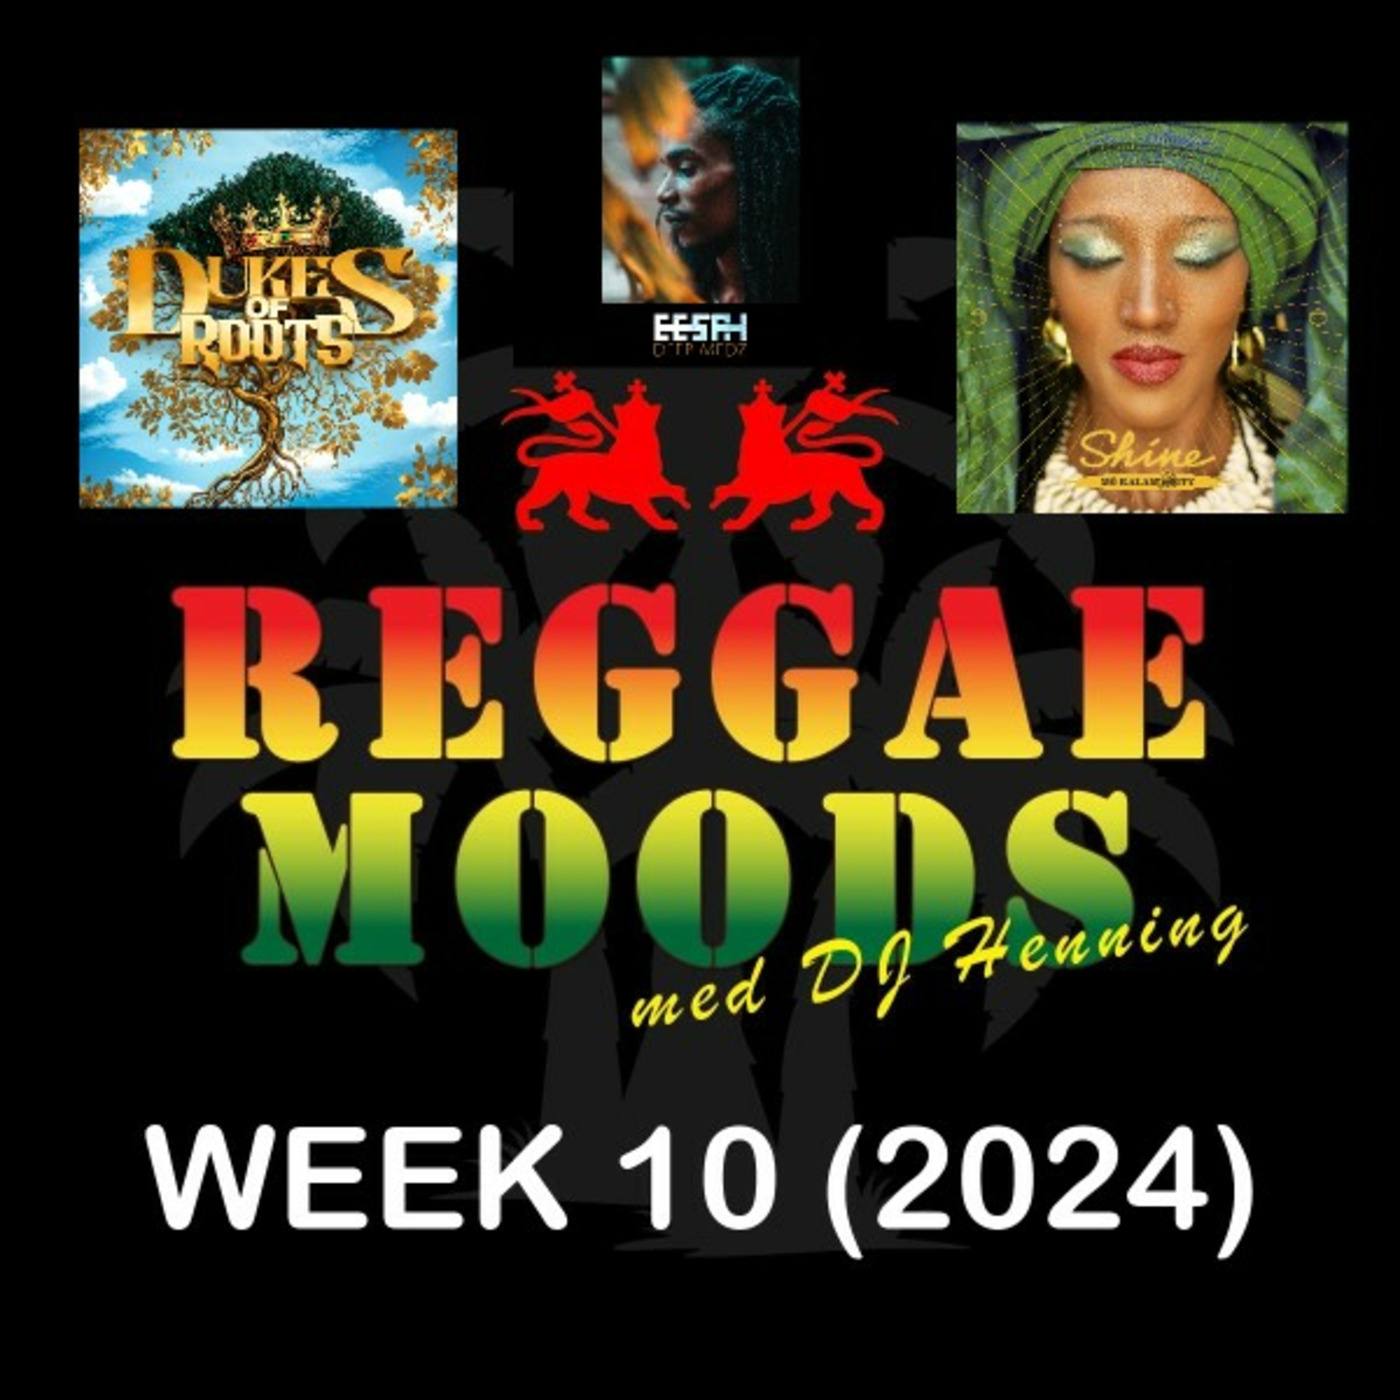 Episode 228: Reggae moods Week 10 (2024)